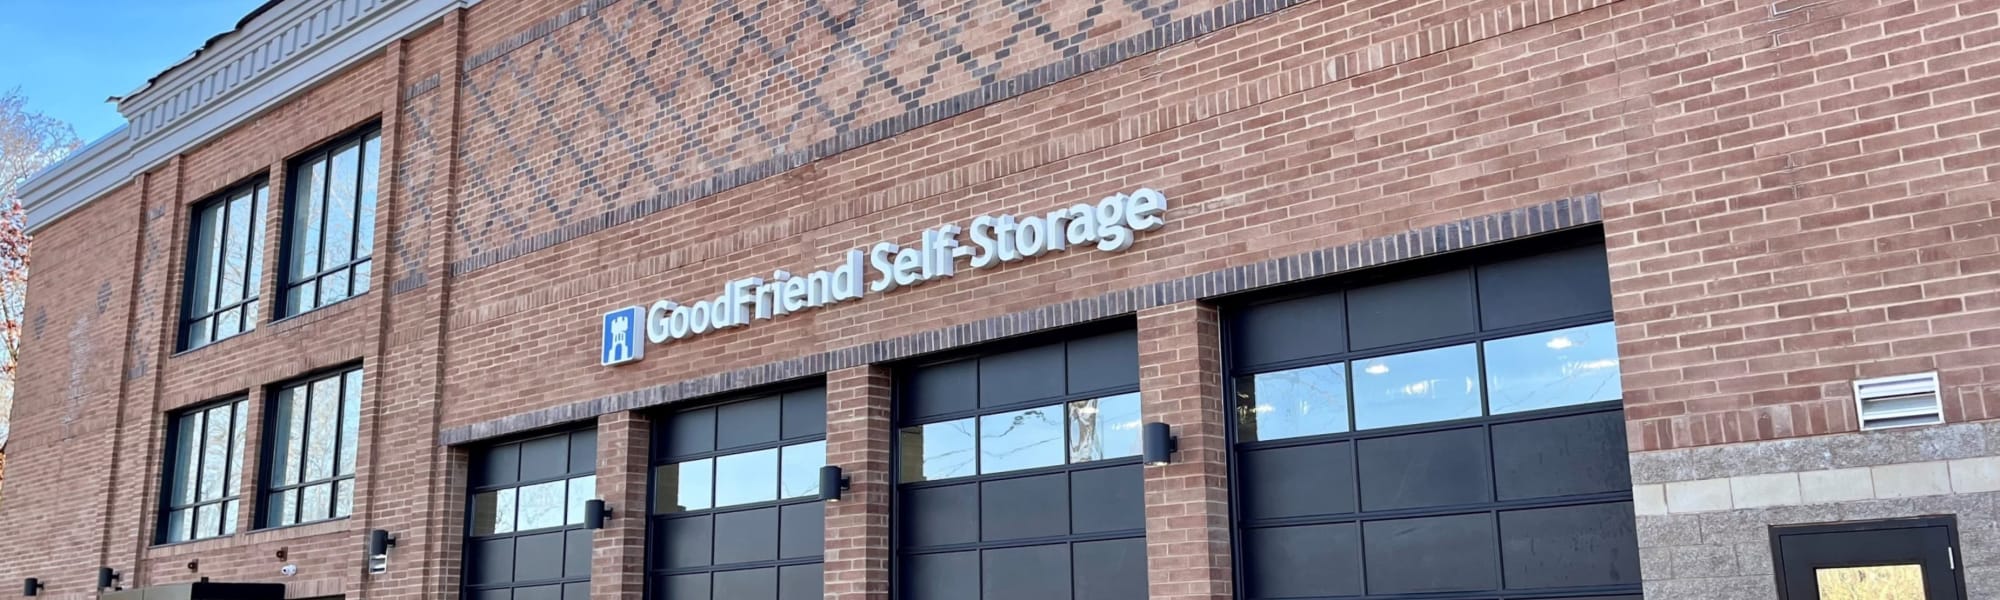 GoodFriend Self Storage Bedford Hills in Bedford Hills, New York